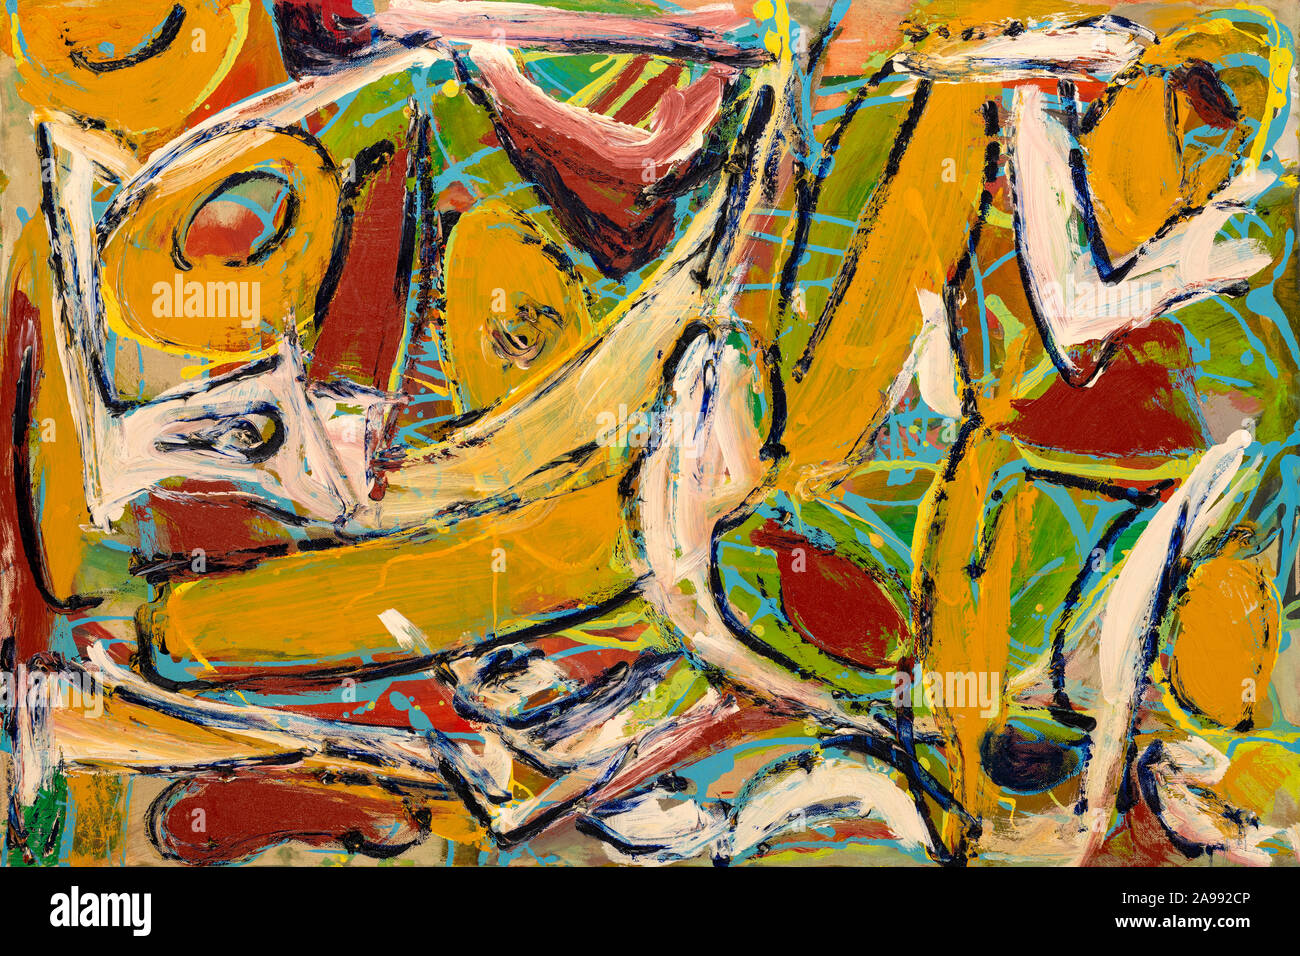 La peinture abstraite avec des couleurs vives, des formes solides et pâteuses de textures. Banque D'Images